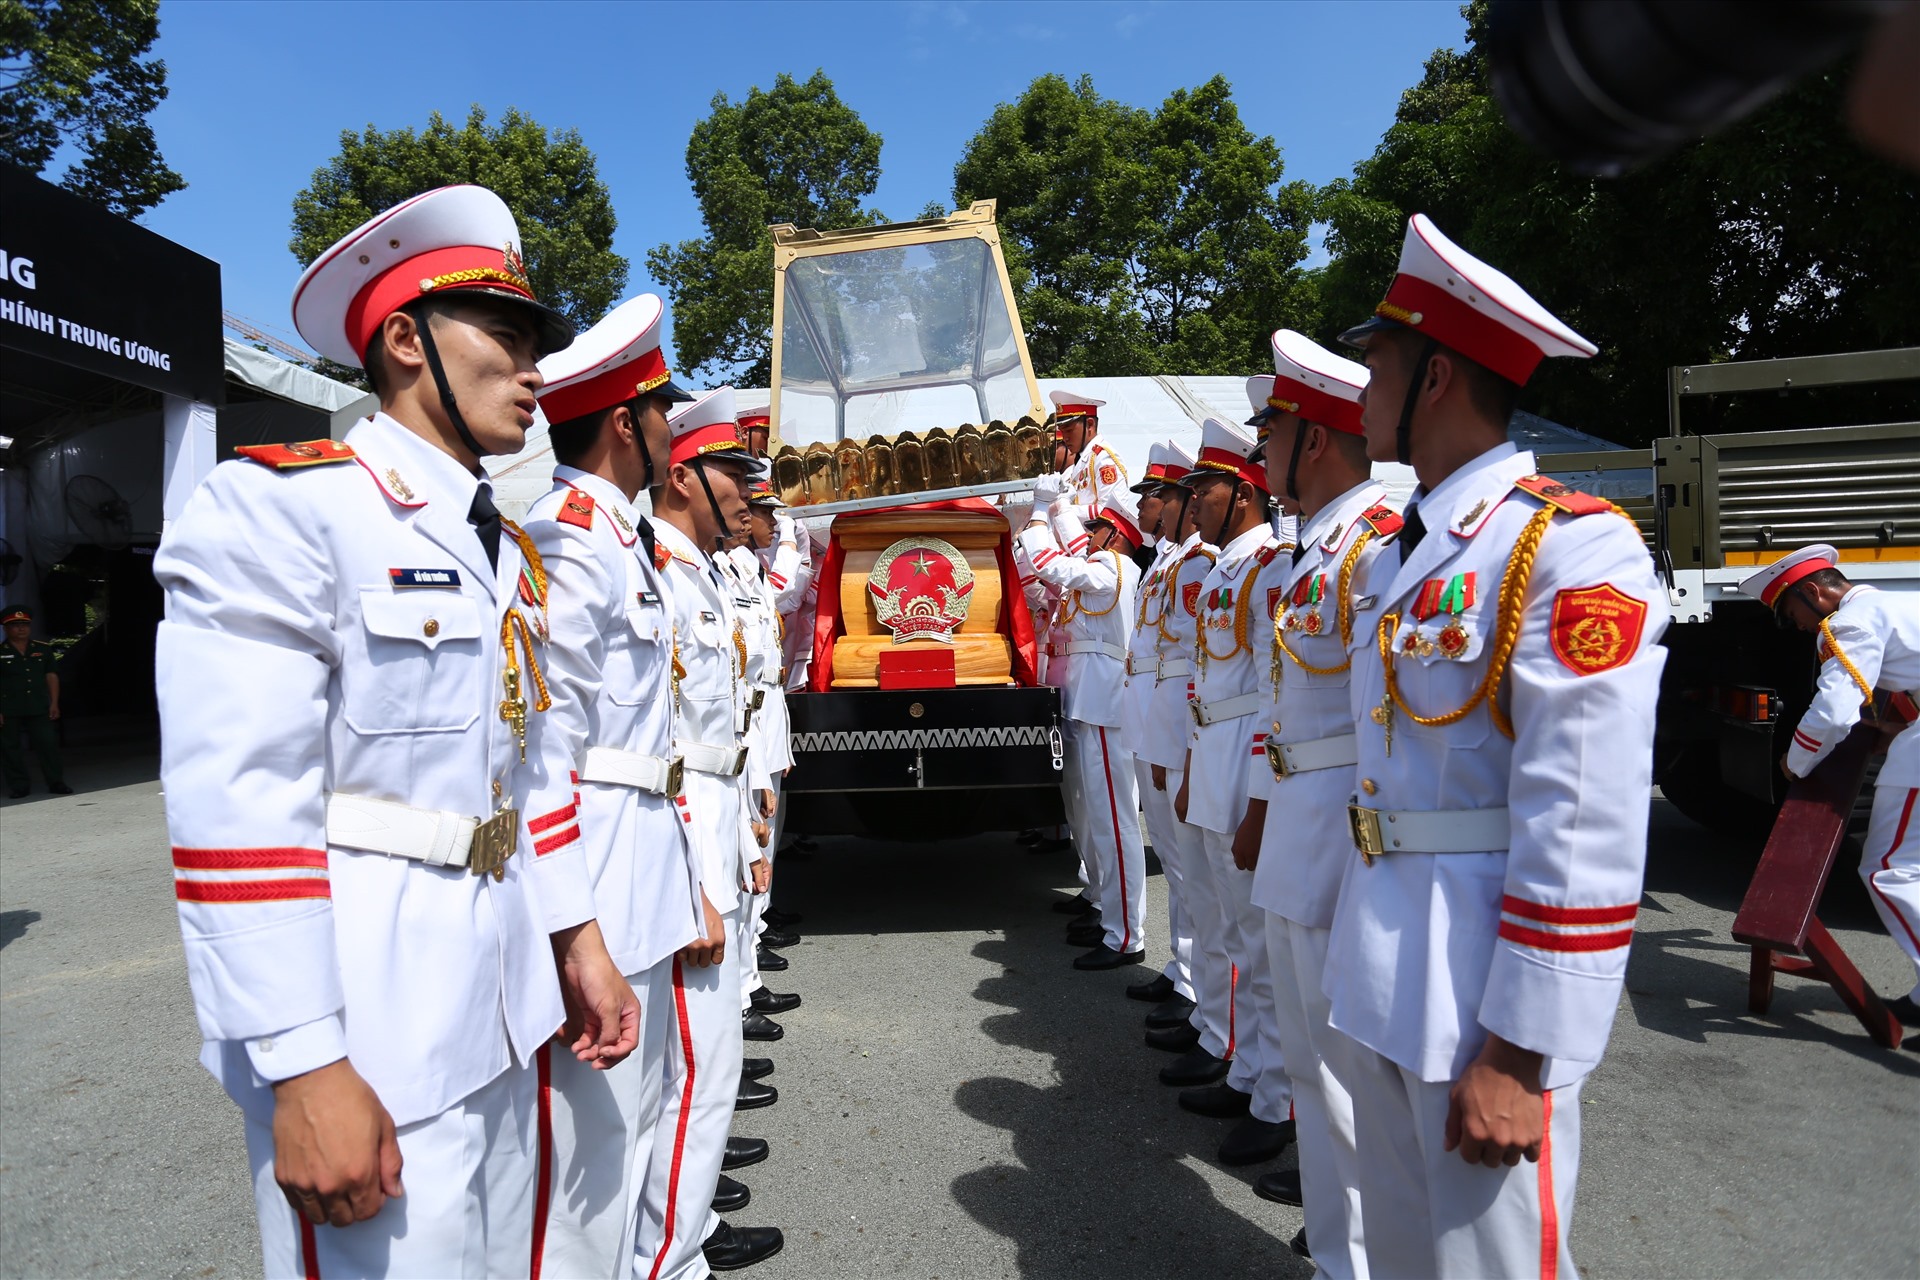 Đúng 9h30, linh cữu ông Trần Quốc Hương được đưa lên xe tang, bắt đầu lễ đi quan, tiến về nơi an nghĩ tại Nghĩa trang TPHCM (quận Thủ Đức, TPHCM).